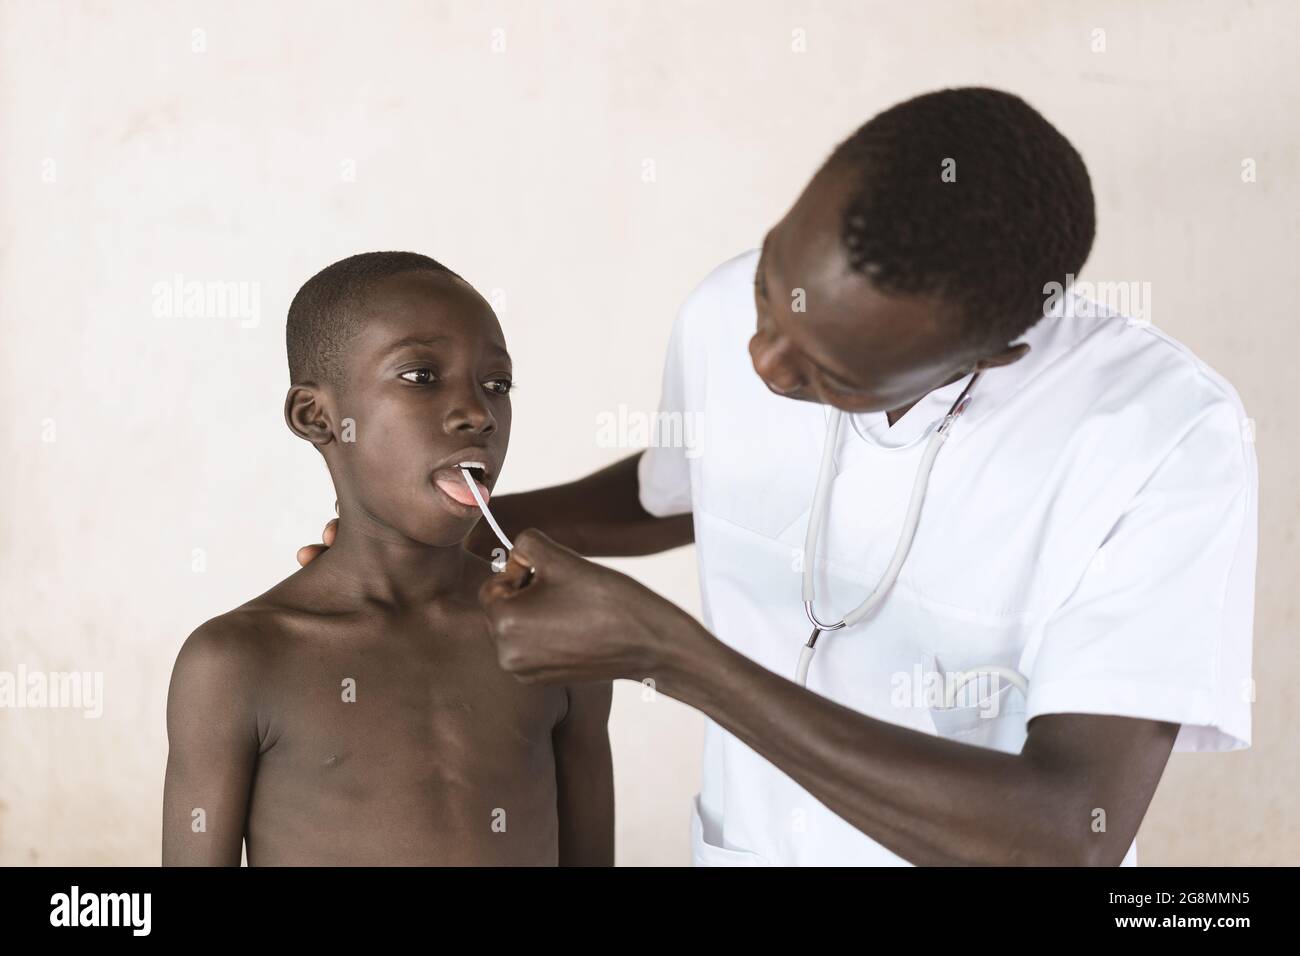 Auf diesem Bild nimmt ein schwarzer Arzt eine Speichelprobe auf einem Tupfer, um die Belastung des Coronavirus bei einem jungen, sehr konformen Jungen zu untersuchen Stockfoto